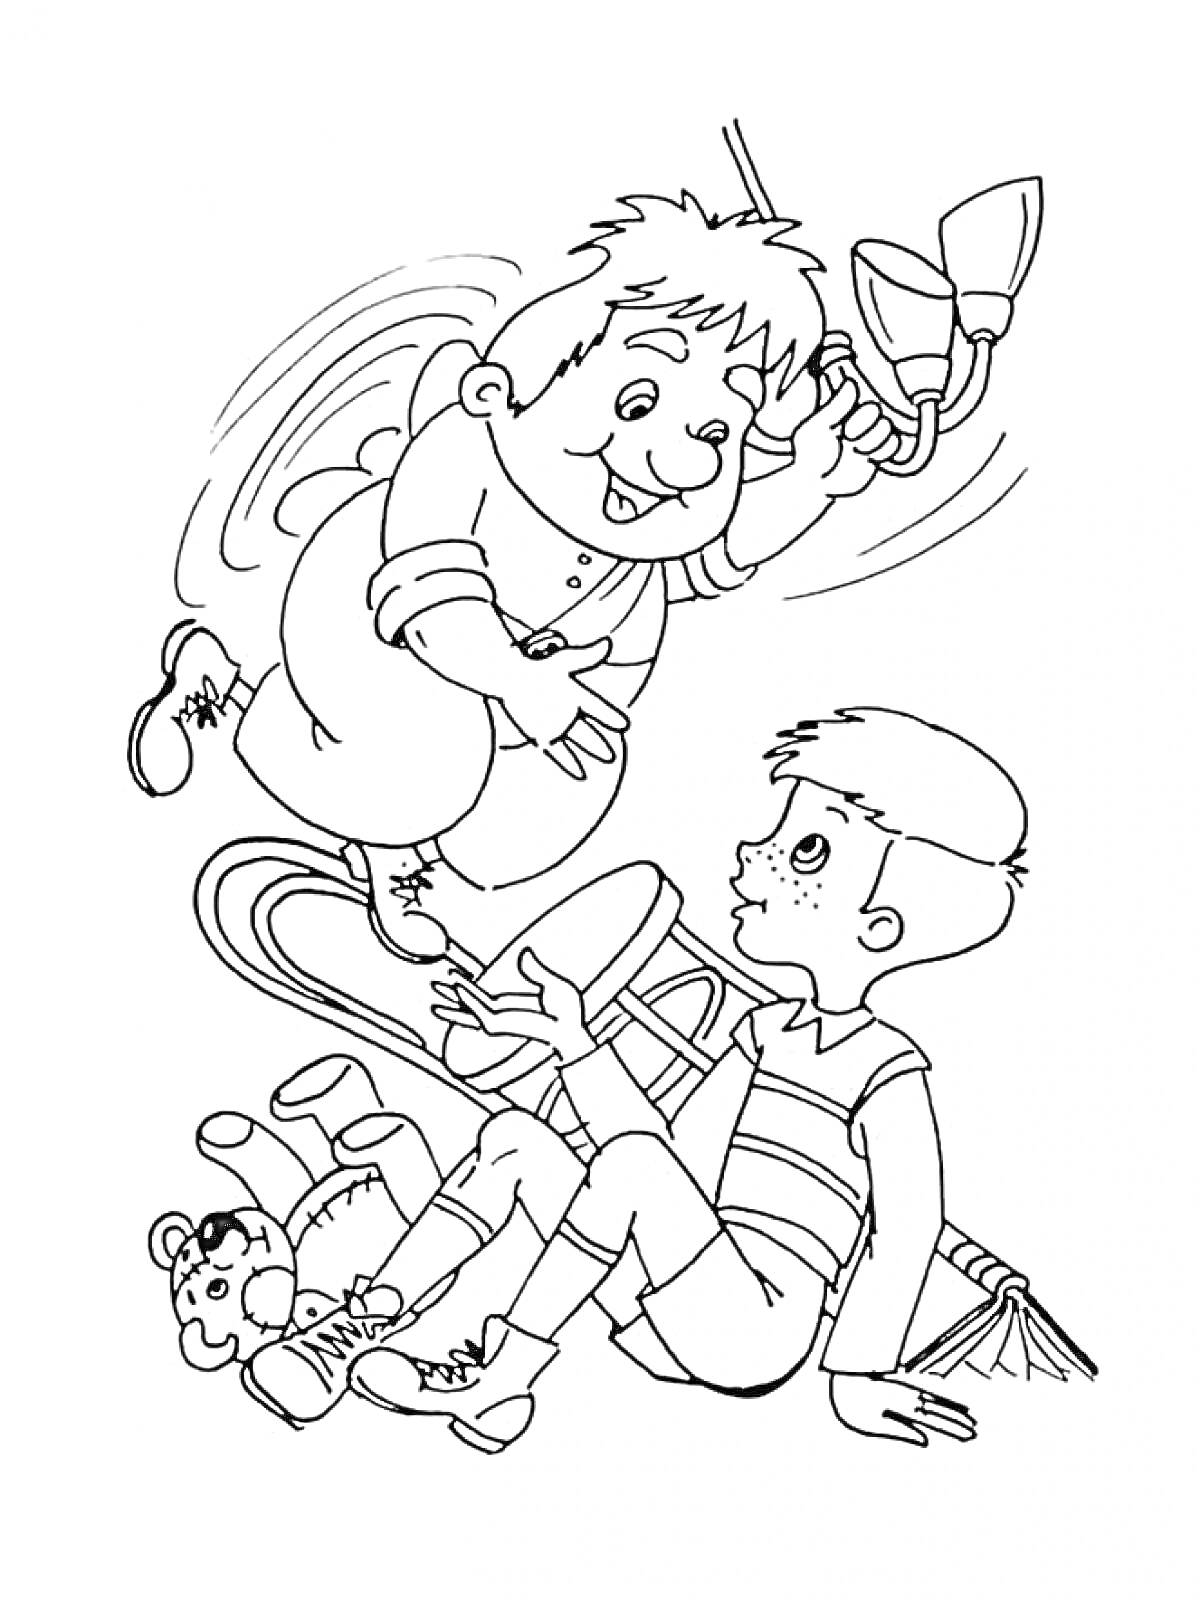 Раскраска Карлсон с пропеллером и мальчик среди игрушек, книг и мебели